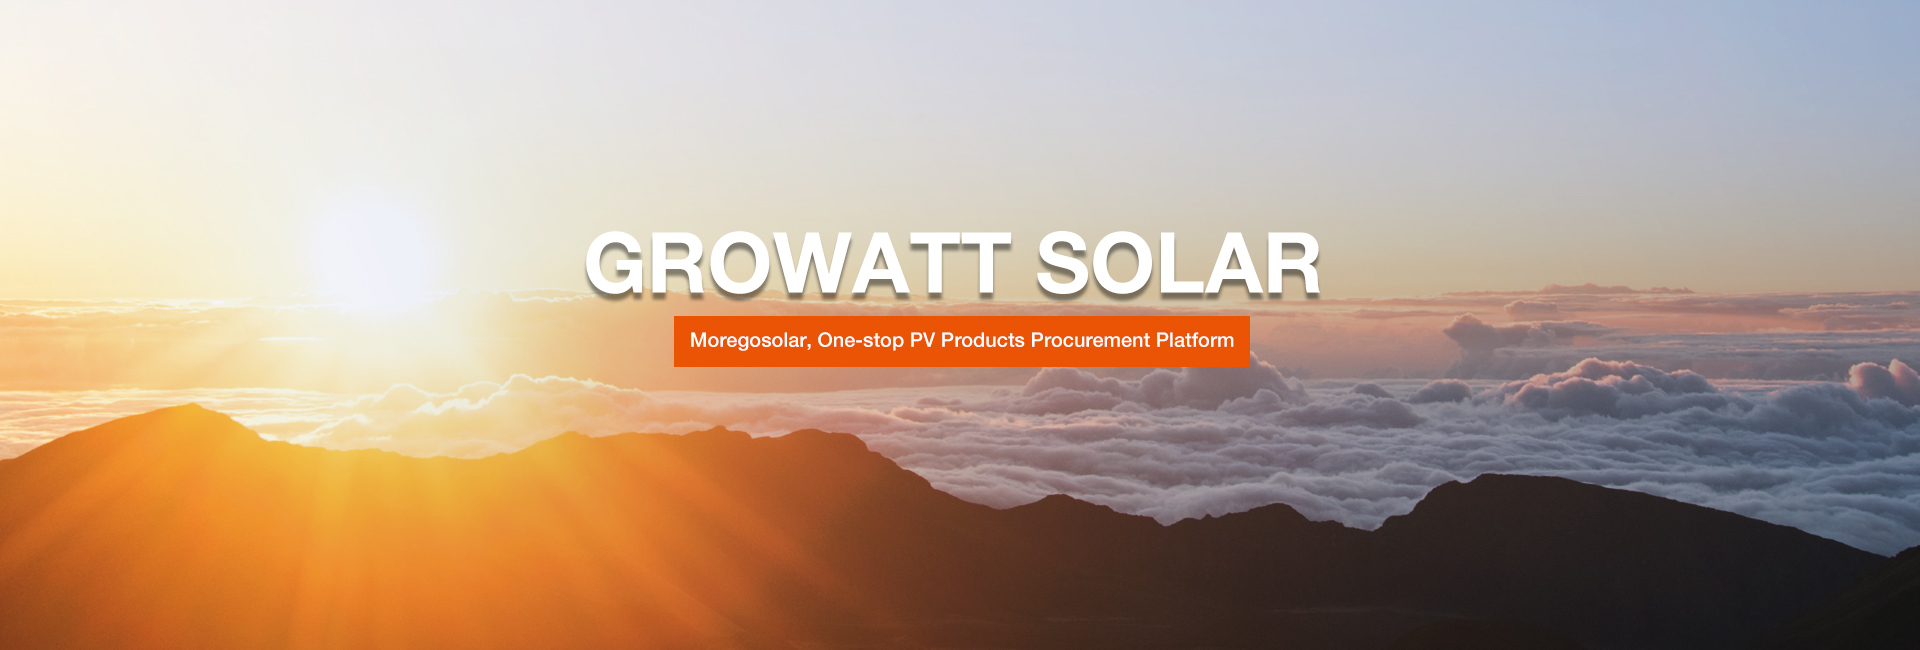 Growatt-solar